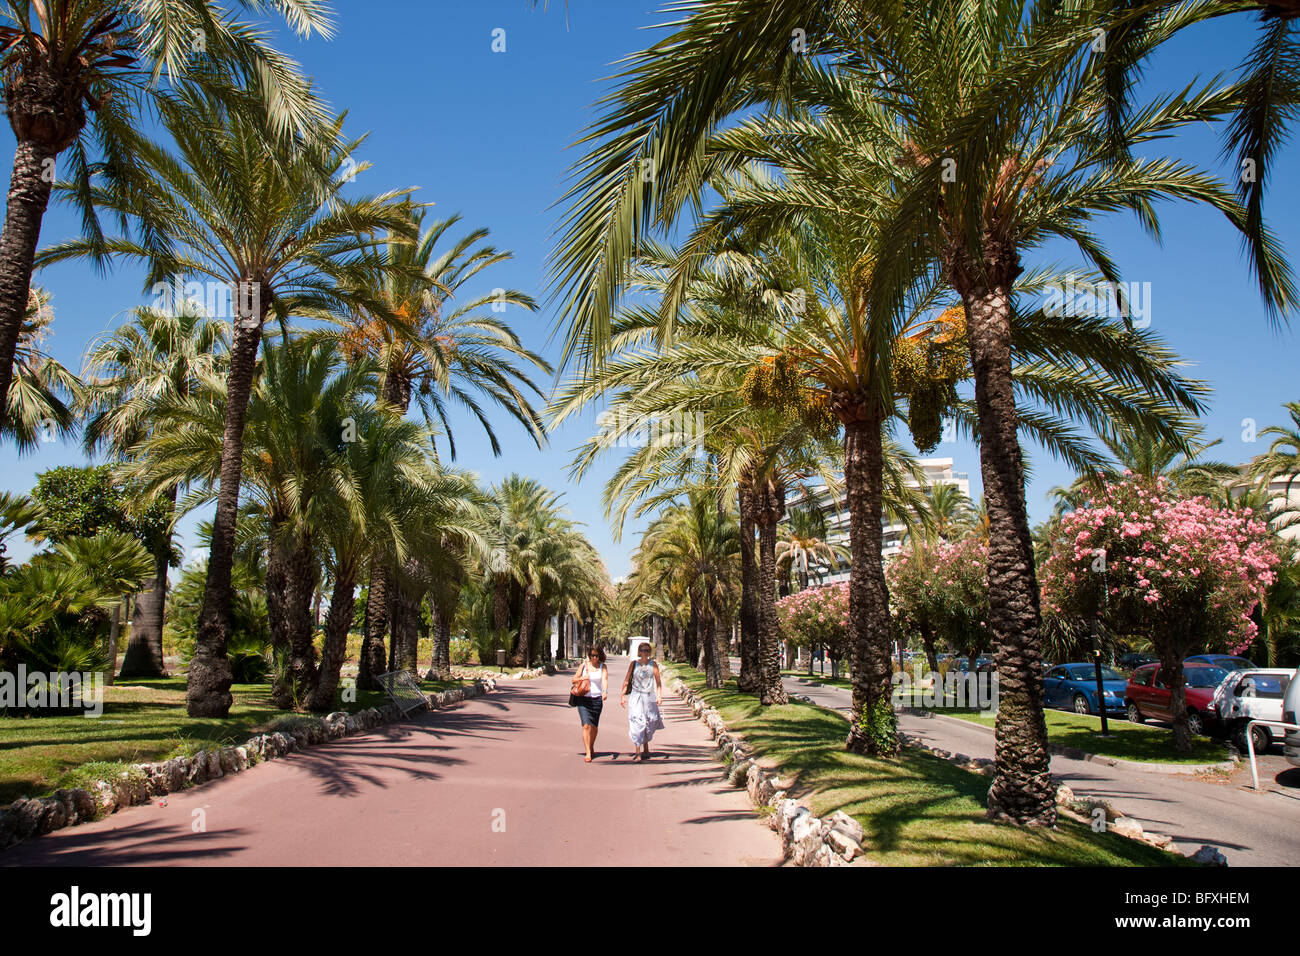 Les marcheurs le long de la Croisette bordée de palmiers, Cannes, Cote d'Azur, France Banque D'Images